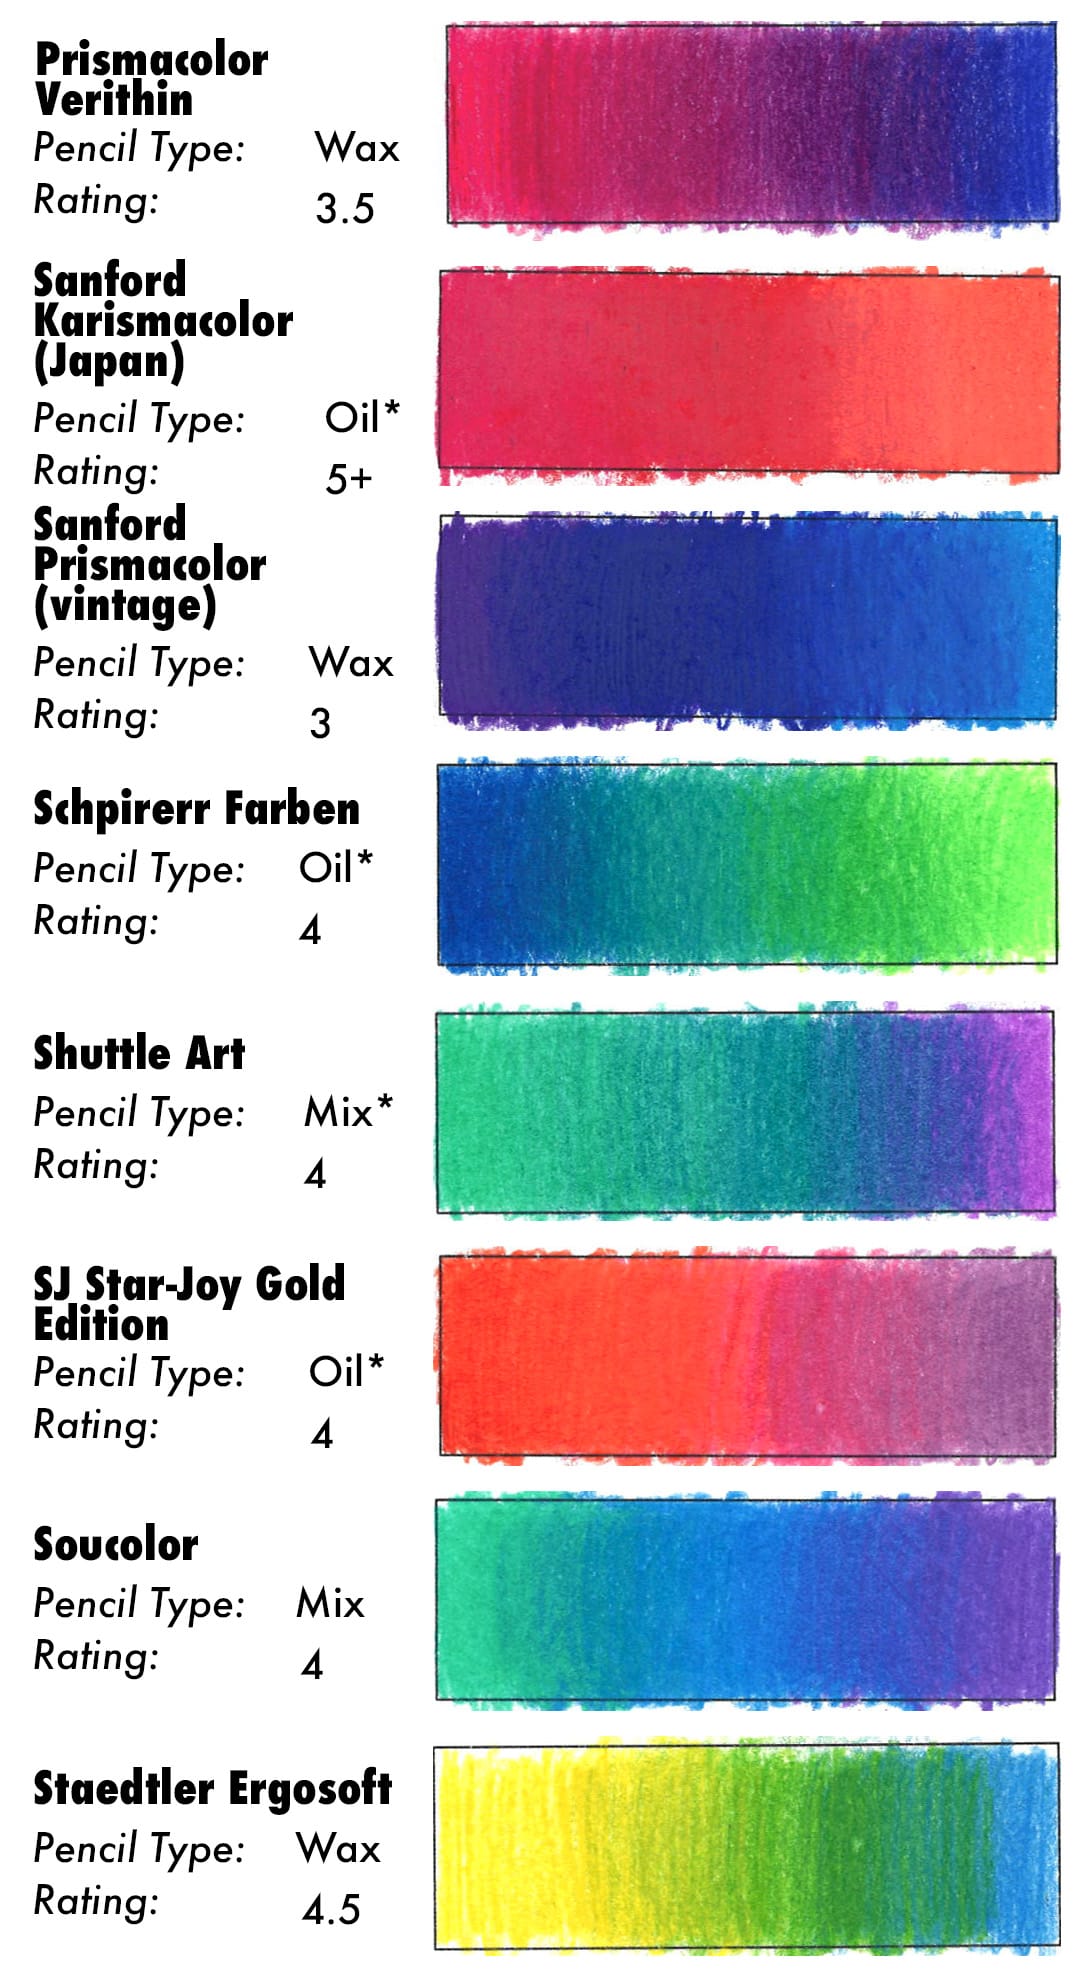 Colored Pencil Blending Results for Prismacolor Verithin, Sanford Karismacolor (Japan), Sanford Prismacolor (vintage). Schpirerr Farbem, Shuttle Art, SJ Star-Joy GOld Edition, Soucolor, and Staedtler Ergosoft.